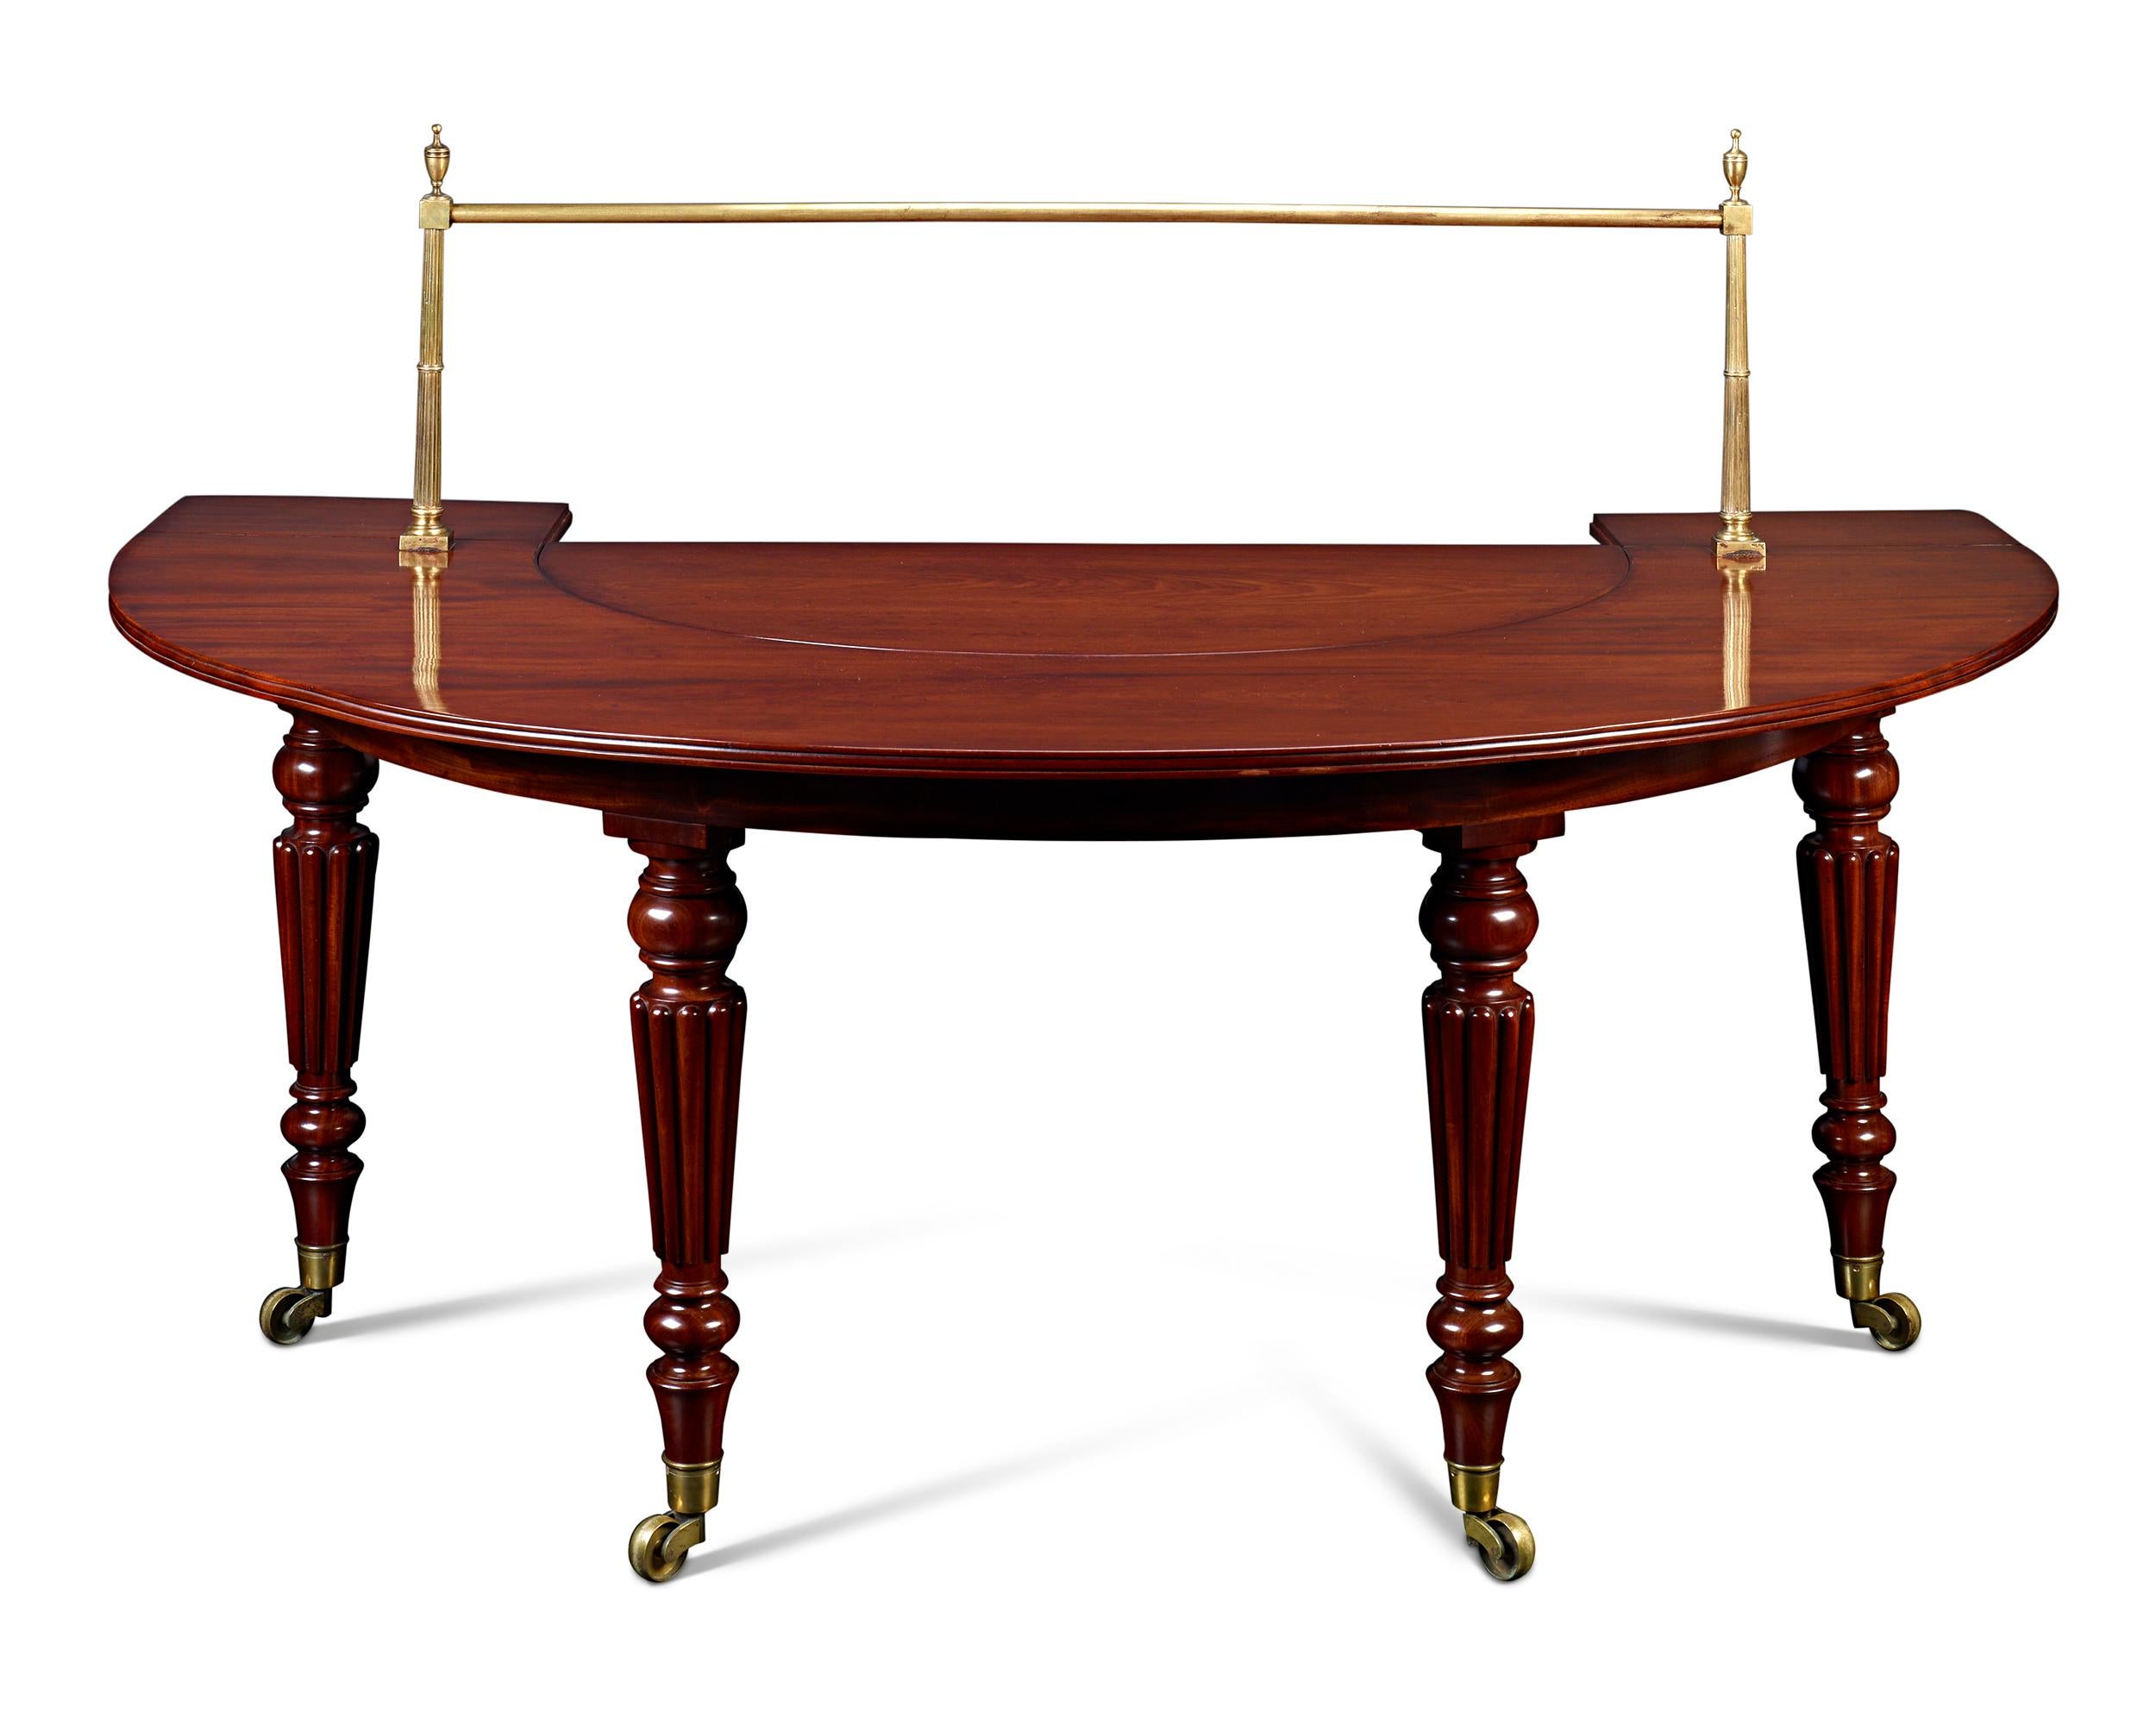 Perfekt proportioniert und wunderschön gearbeitet, ist dieser seltene Jagdtisch ein außergewöhnliches Beispiel für die Tischlerei der Regency-Periode. Dieser auch als Gesellschaftstisch bezeichnete Tisch in Form eines Hufeisens wurde speziell für